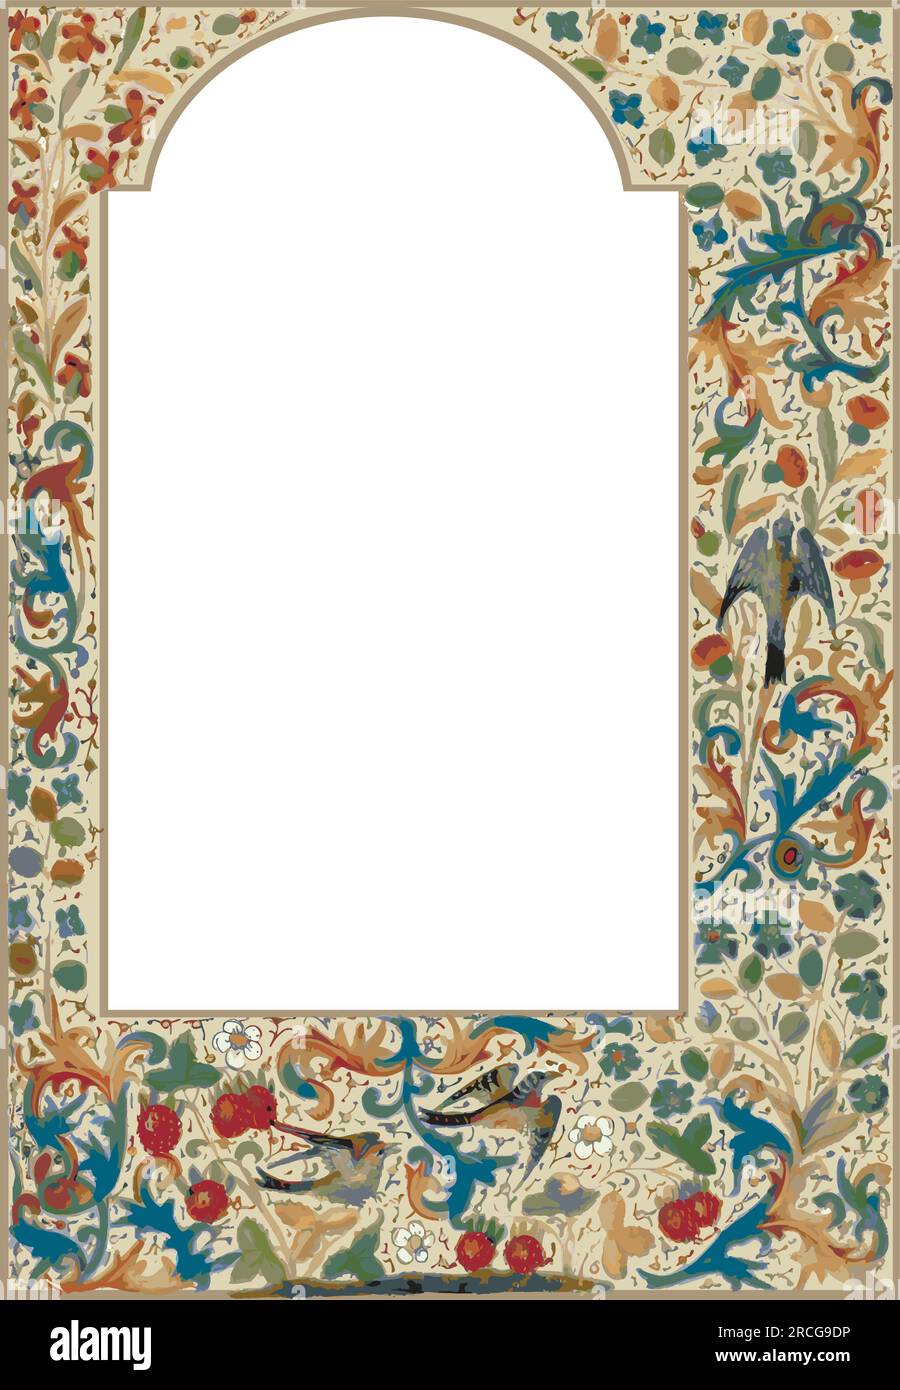 Vögel im mittelalterlichen Stil beleuchtete Manuskriptgrenze, Schwalben fliegen, Pflanzen, Blumen und Reben Stock Vektor